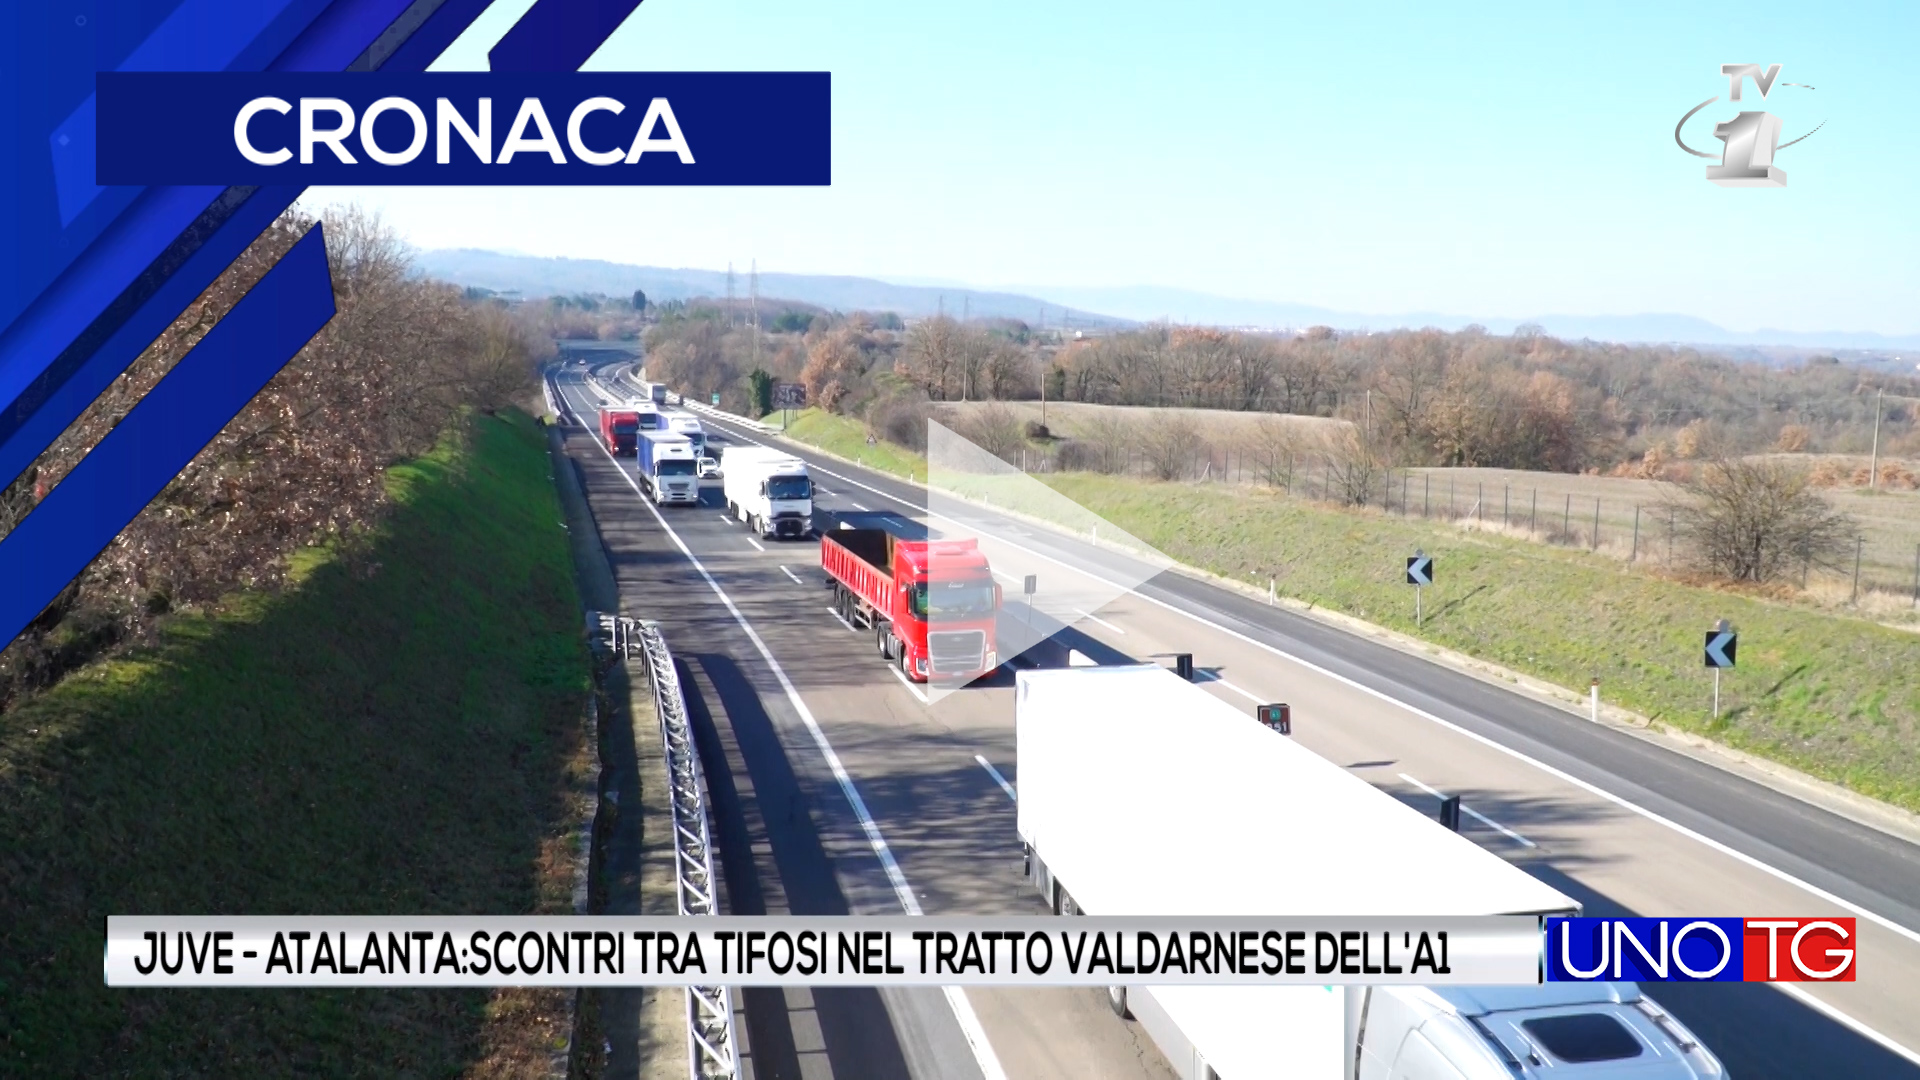 Juve - Atalanta: scontri tra tifosi nel tratto valdarnese dalla A1